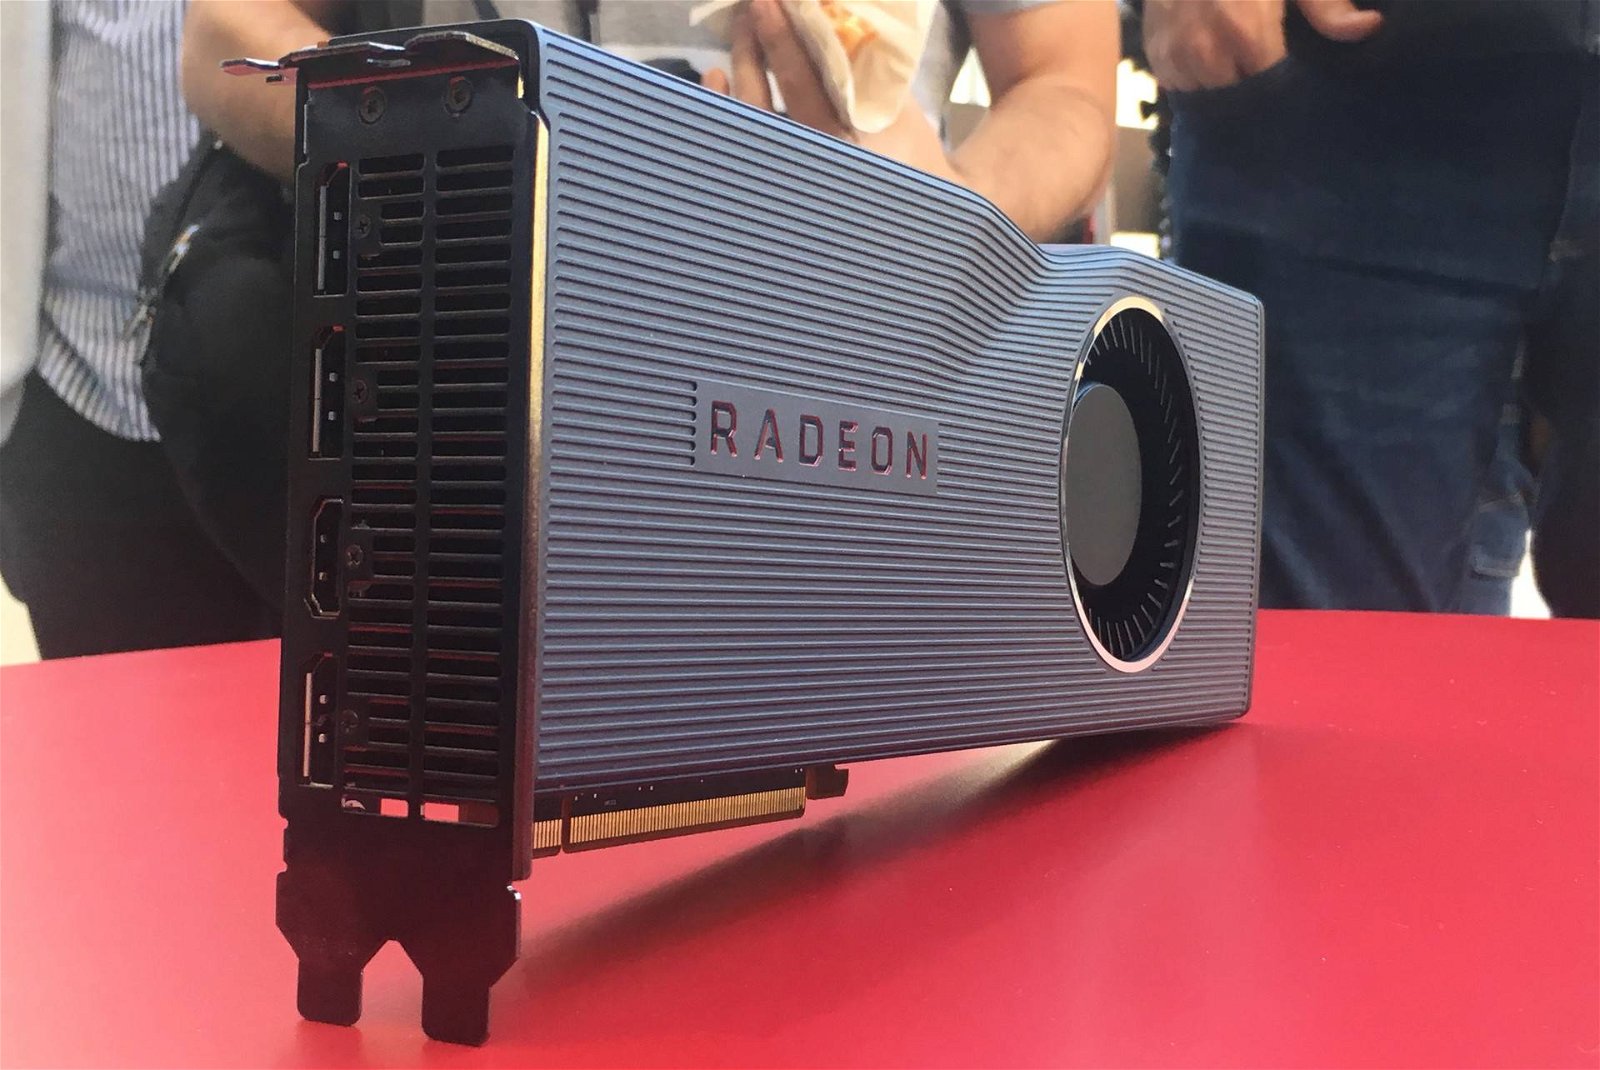 Immagine di Radeon RX 5700 XT e 5700, AMD taglia il prezzo prima dell'uscita